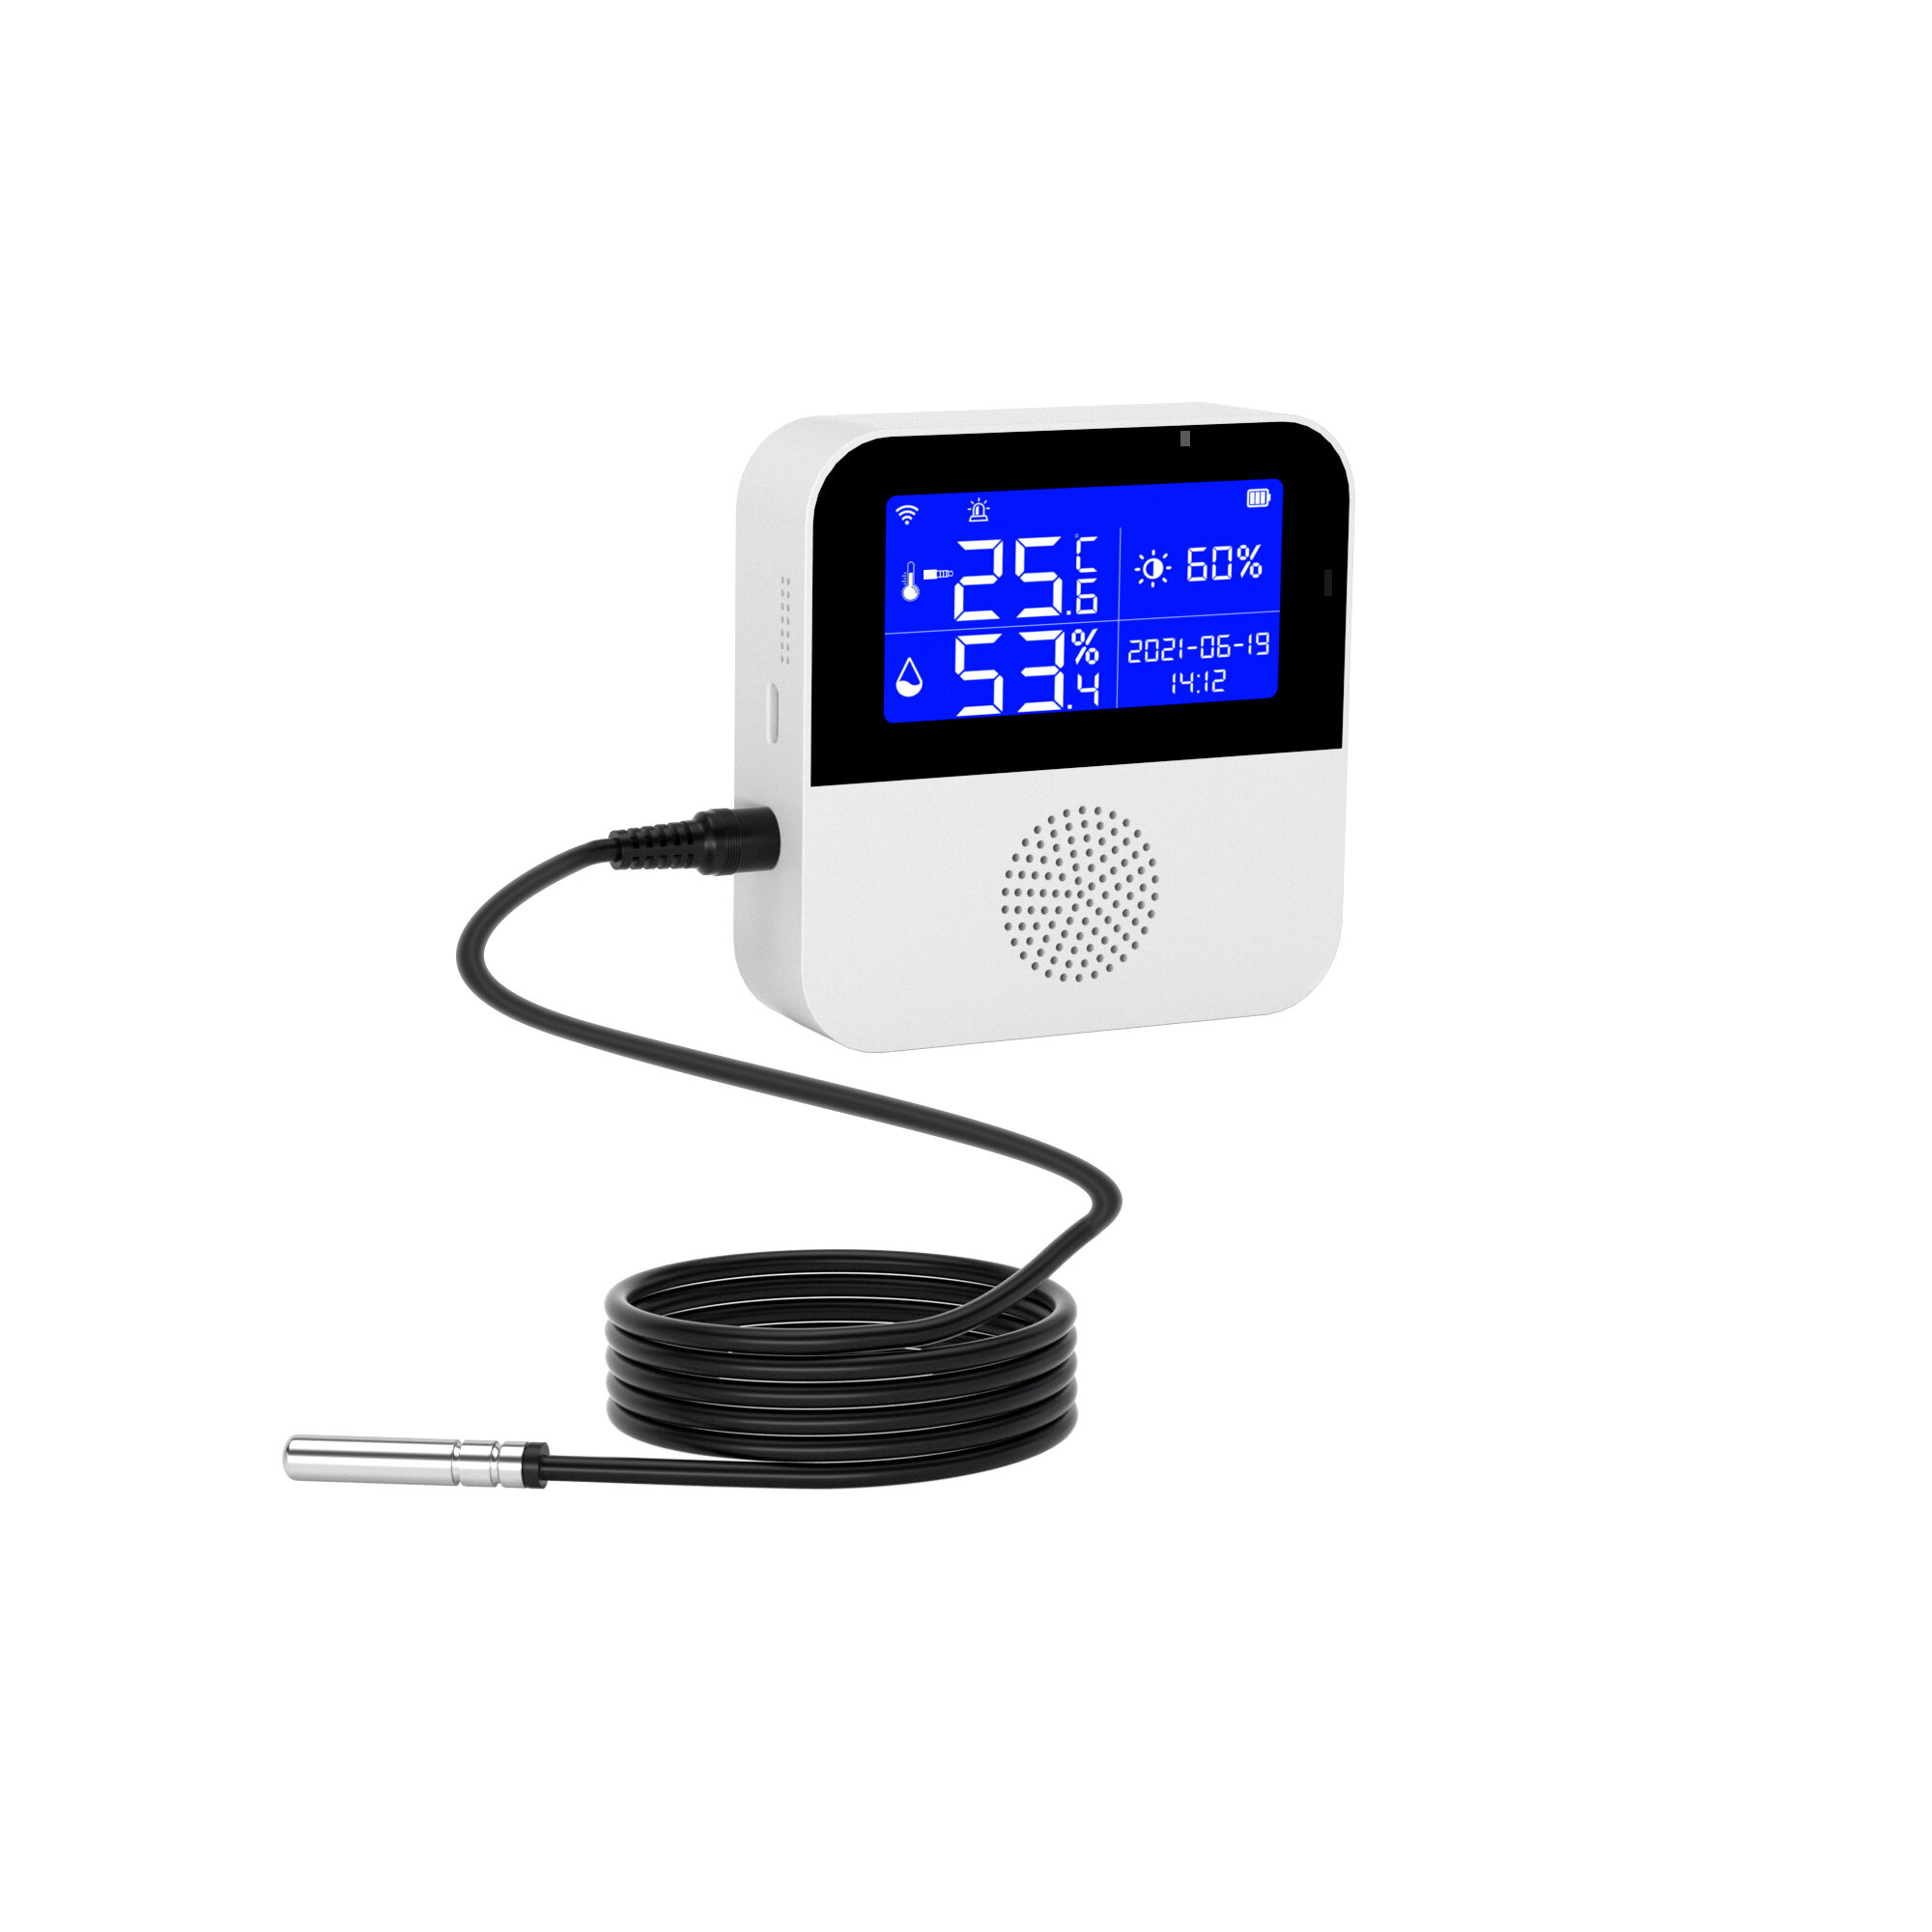 Στα 14.03€ χαμηλότερη τιμή ως σήμερα από αποθήκη Κίνας | Tuya WiFi Temperature Humidity Sensor With LCD Display Smart Life Remote Monitor Indoor Thermometer Hygrometer Via Google Alexa